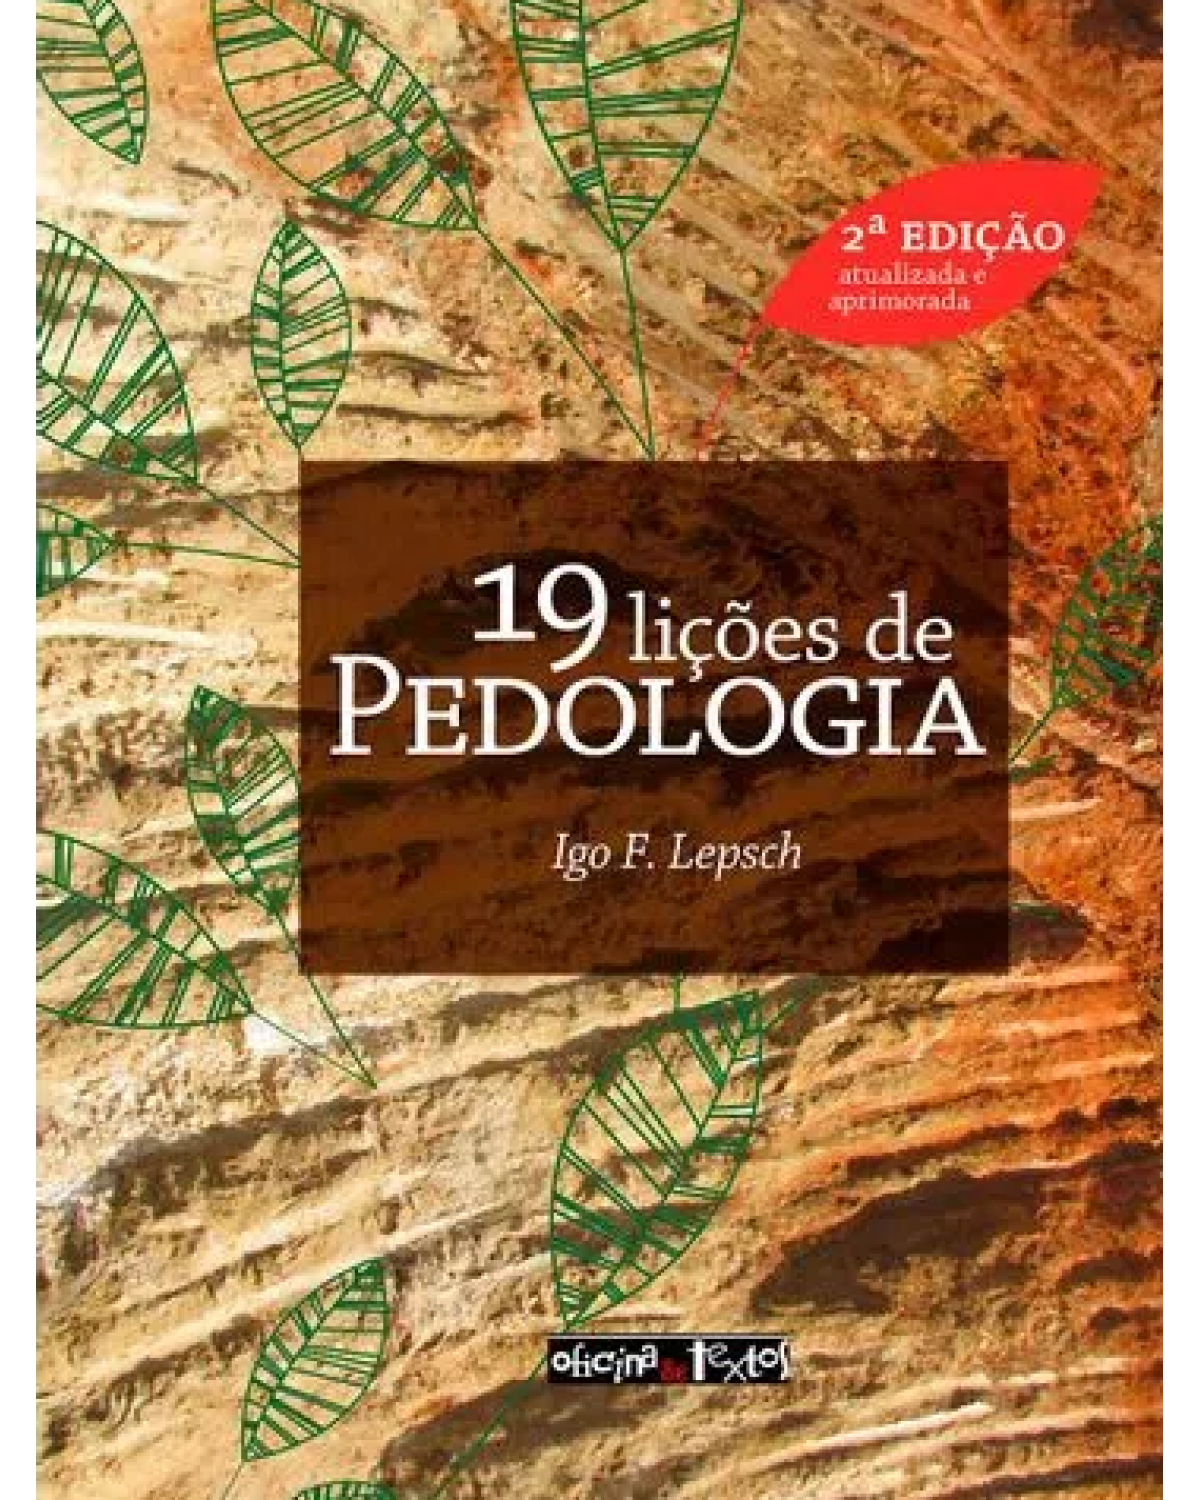 19 lições de pedologia - 2ª Edição | 2021